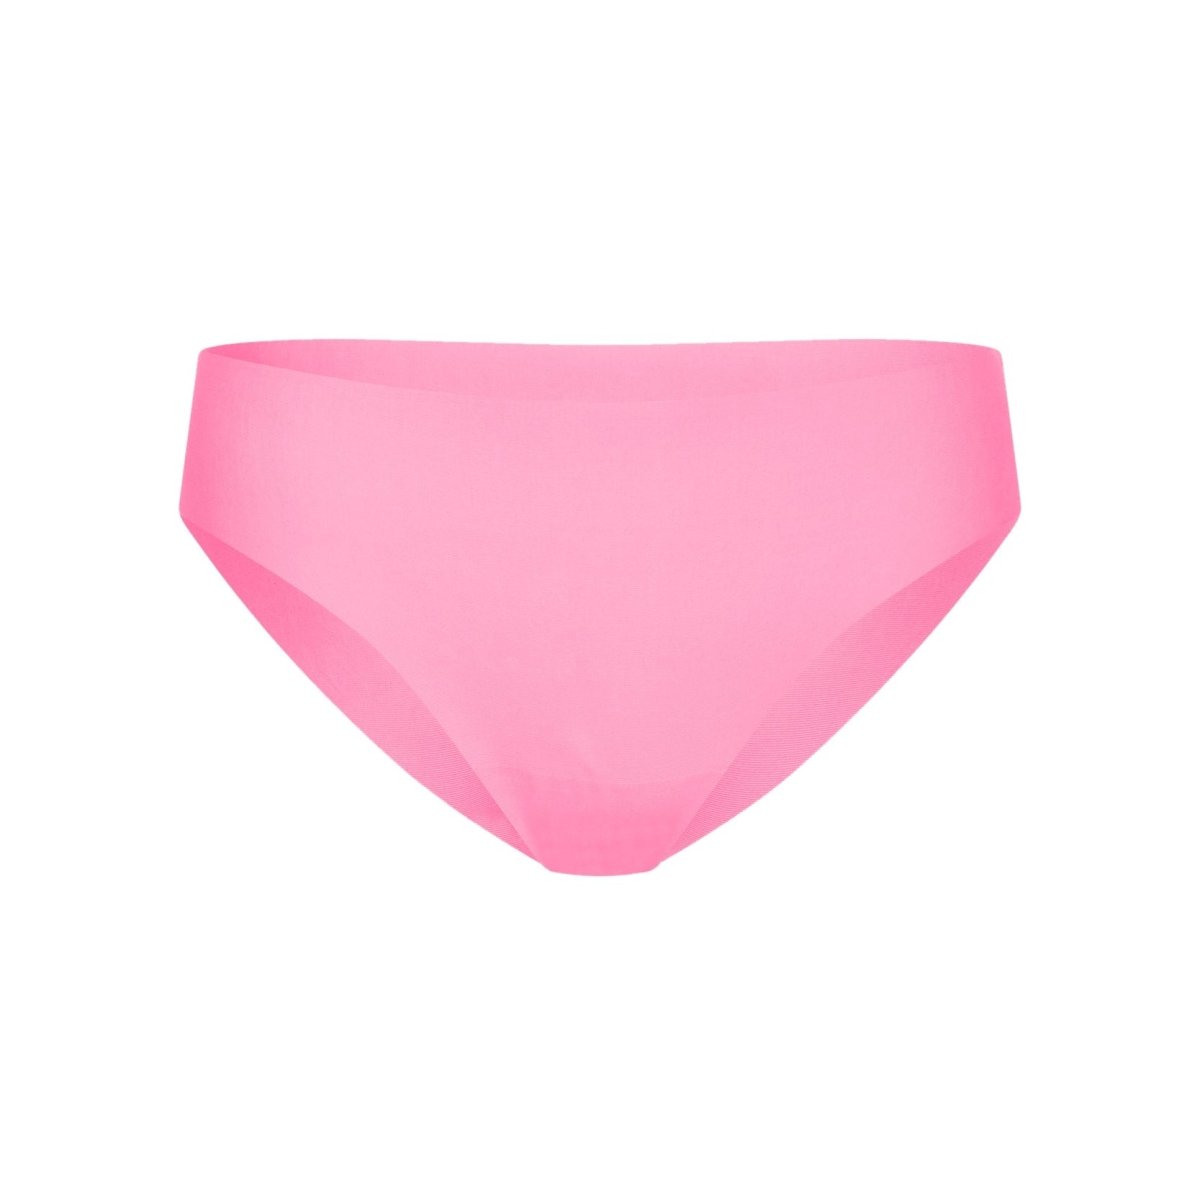 Mid-Rise Bikini - Seamless Cotton - Confetti - Peach Underwear